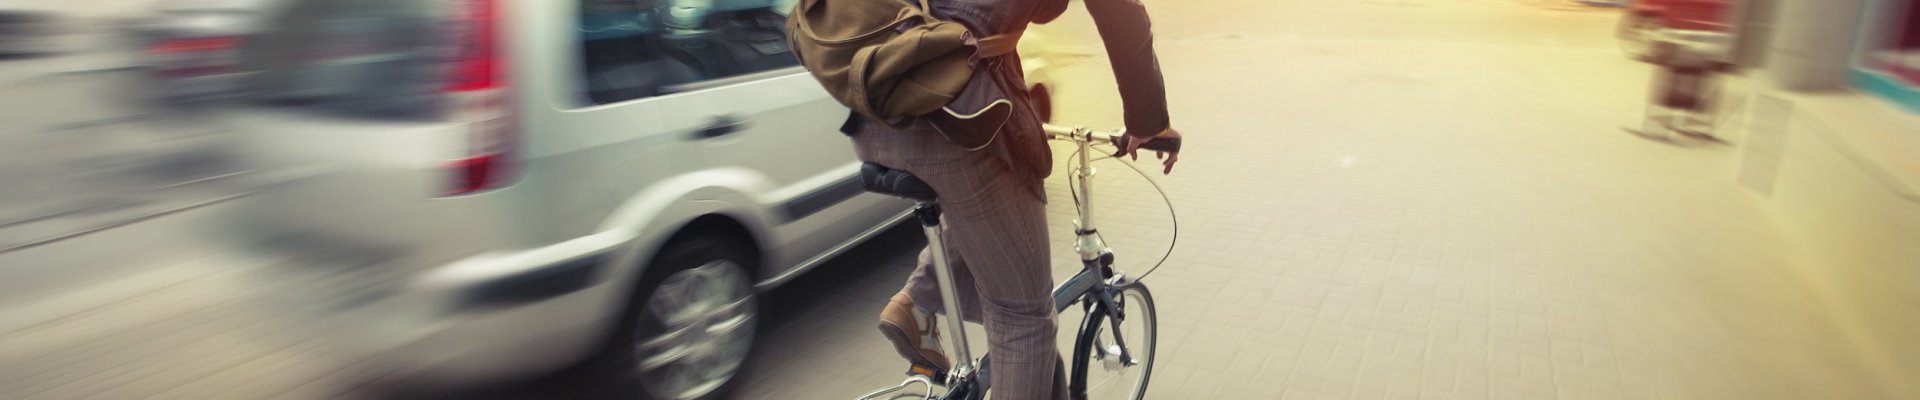 Bicicleta y coche circulando por ciudad